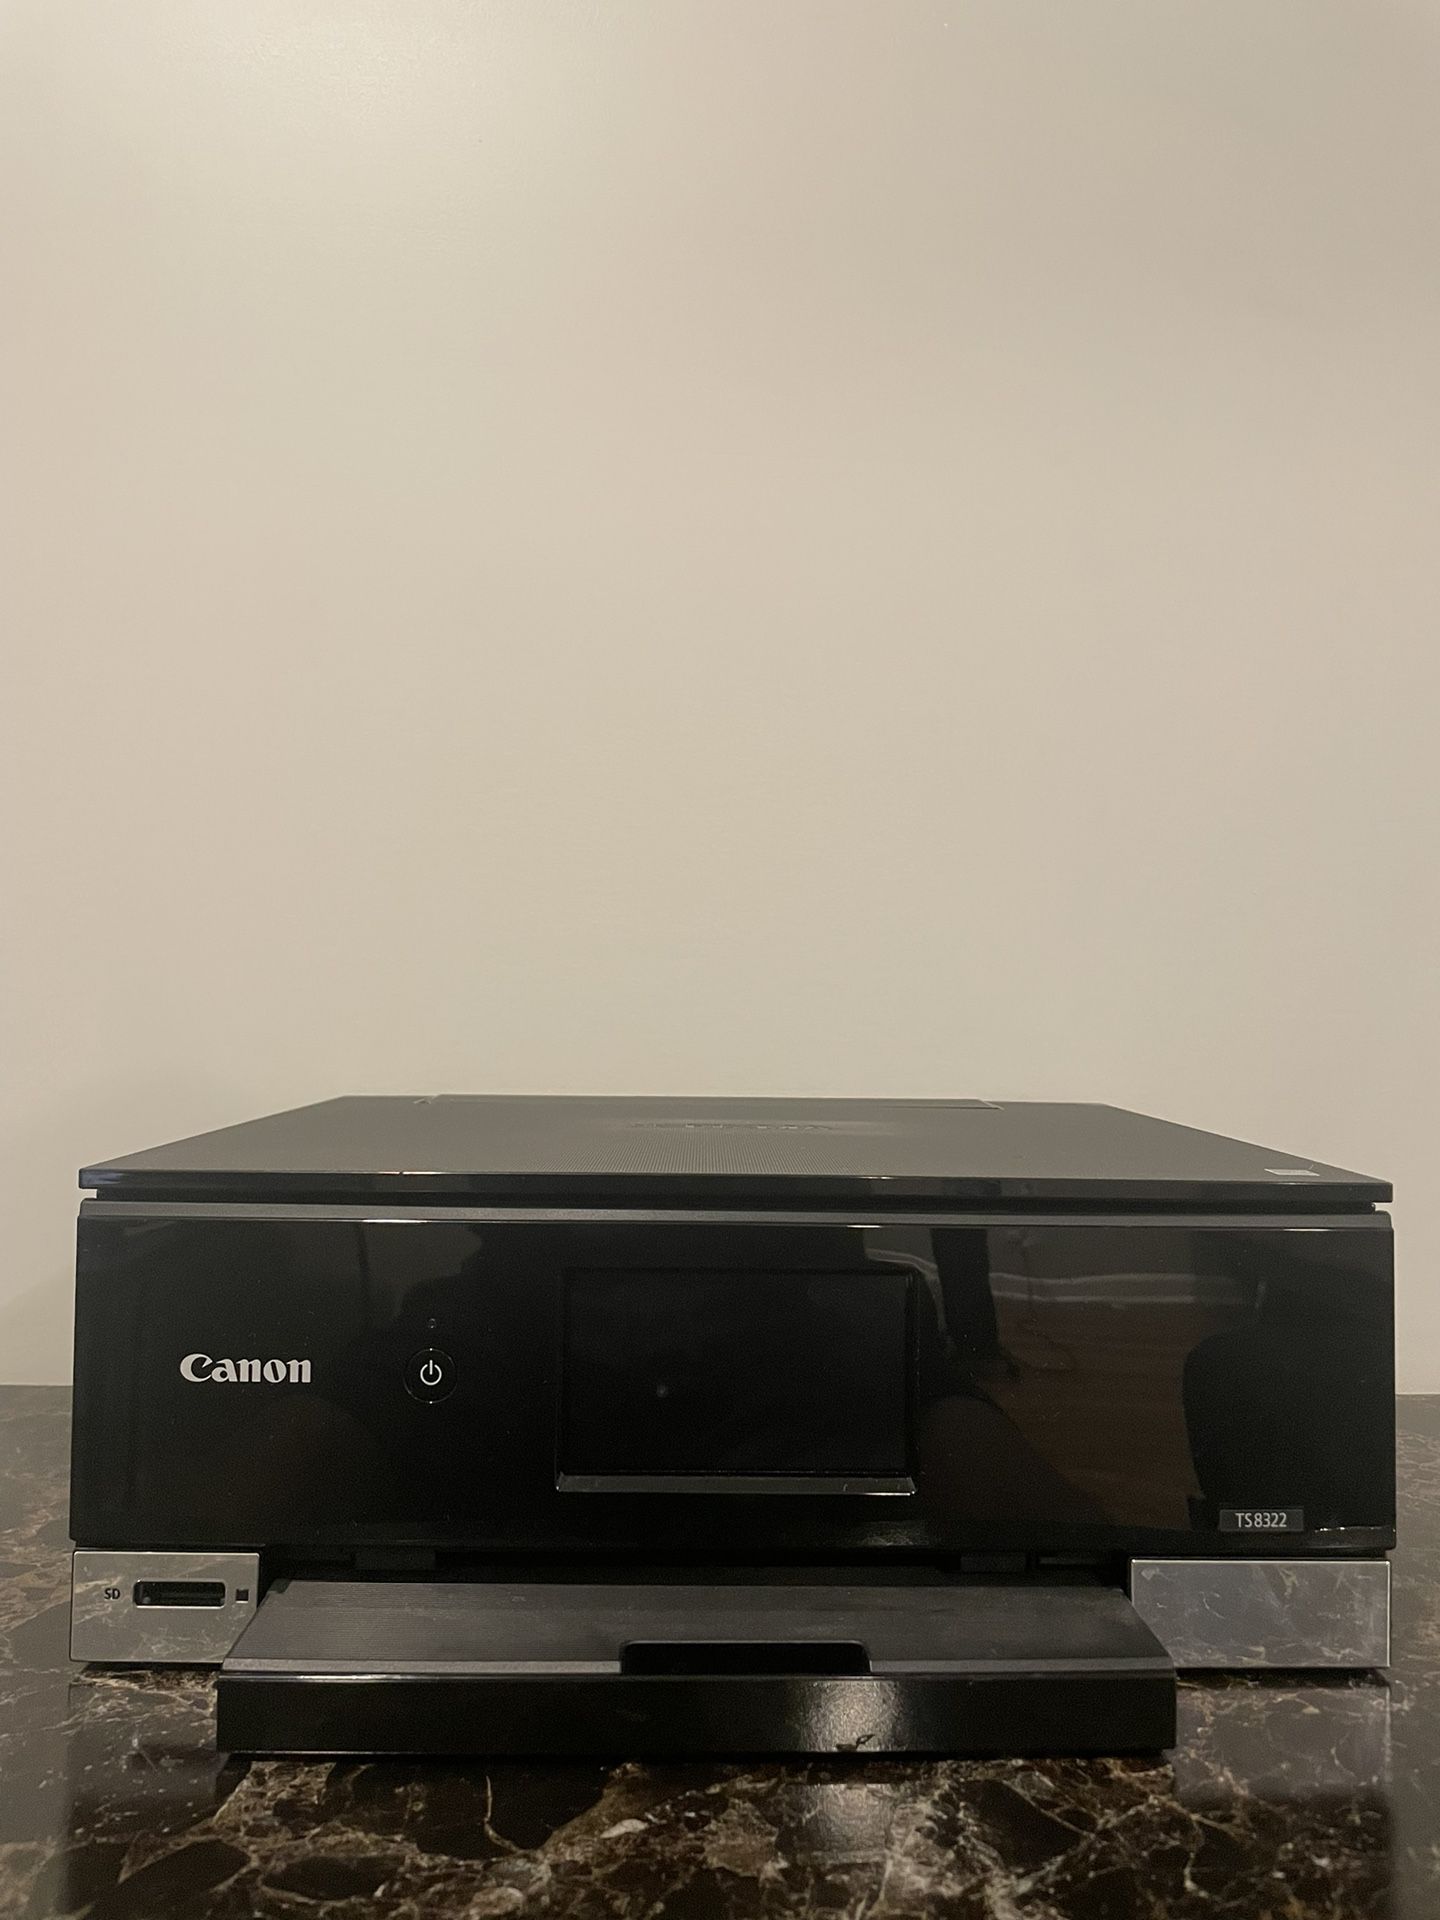 Canon PIXMA TS8322 All-In-One Wireless Color Inkjet Photo Printer & Copier